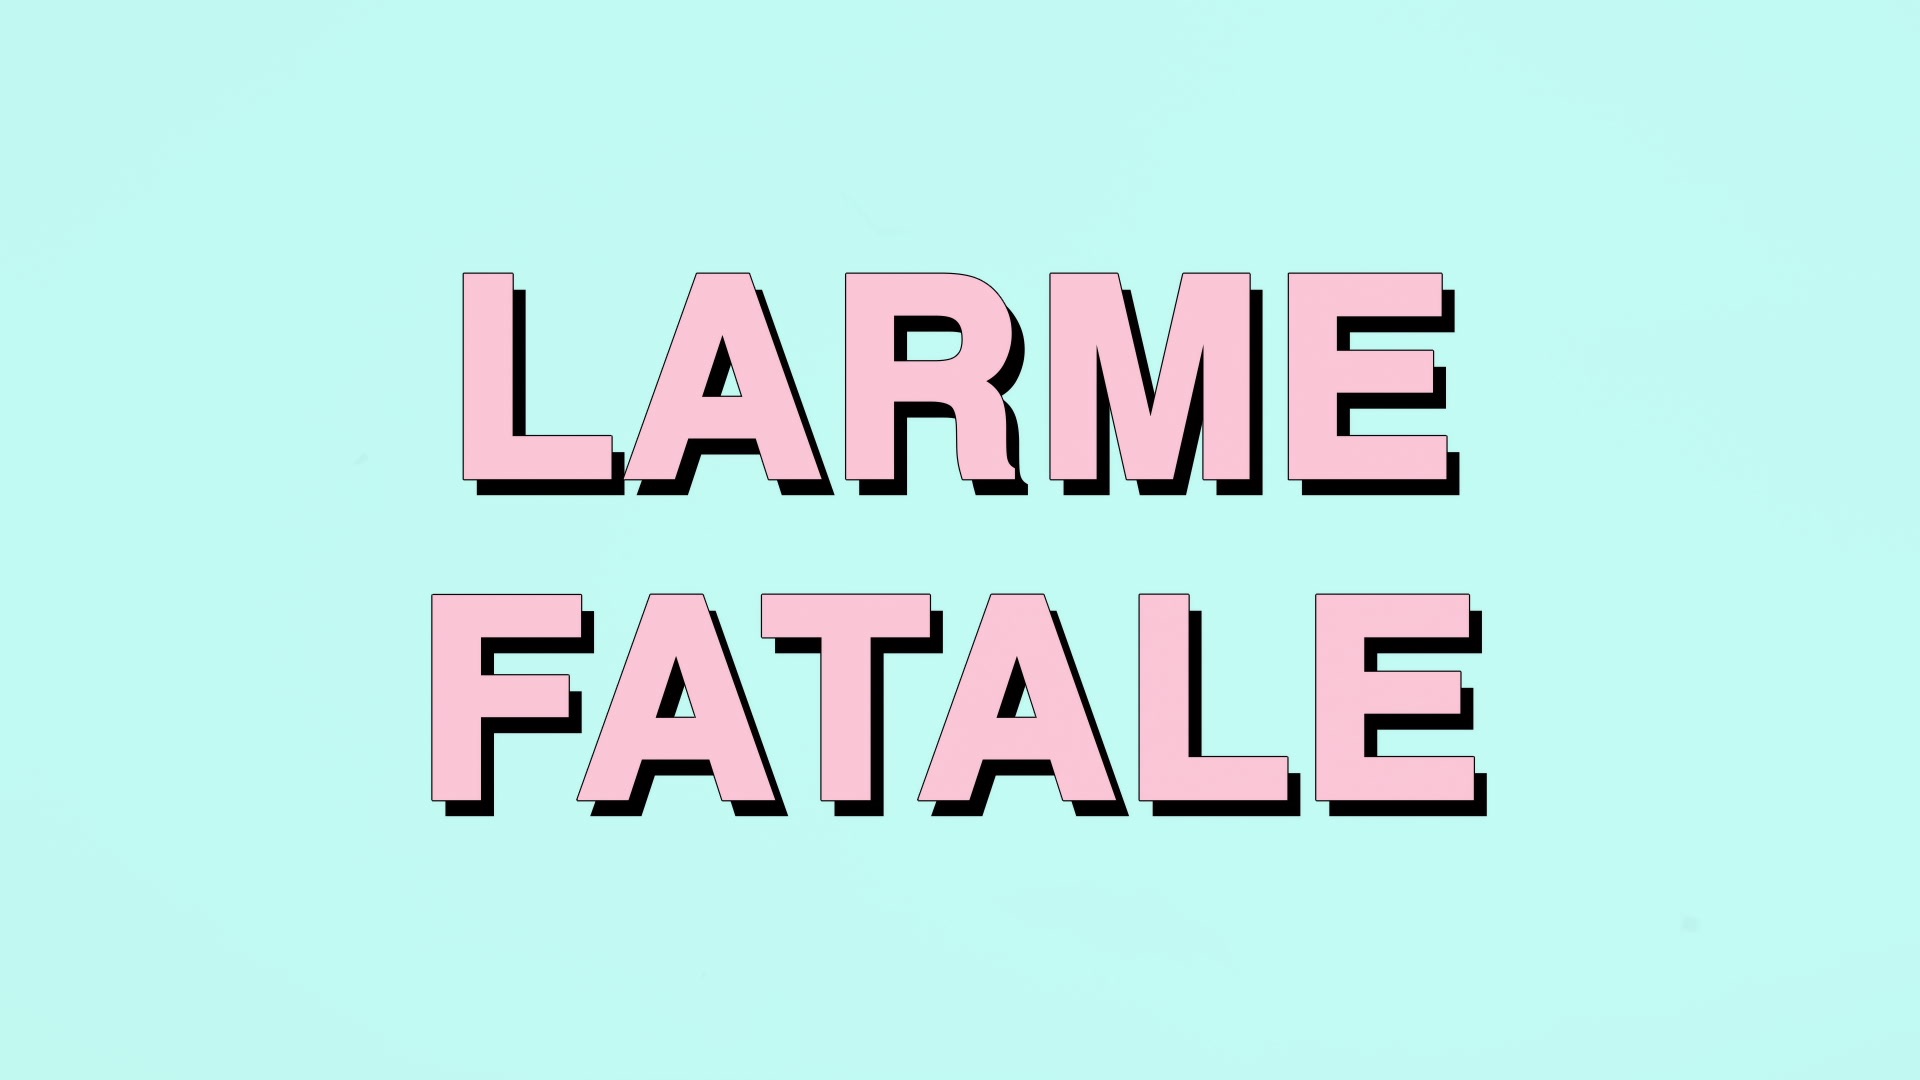 Larme fatale (Lyrics Video) - Music Video by Julien Doré & Eddy de Pretto -  Apple Music